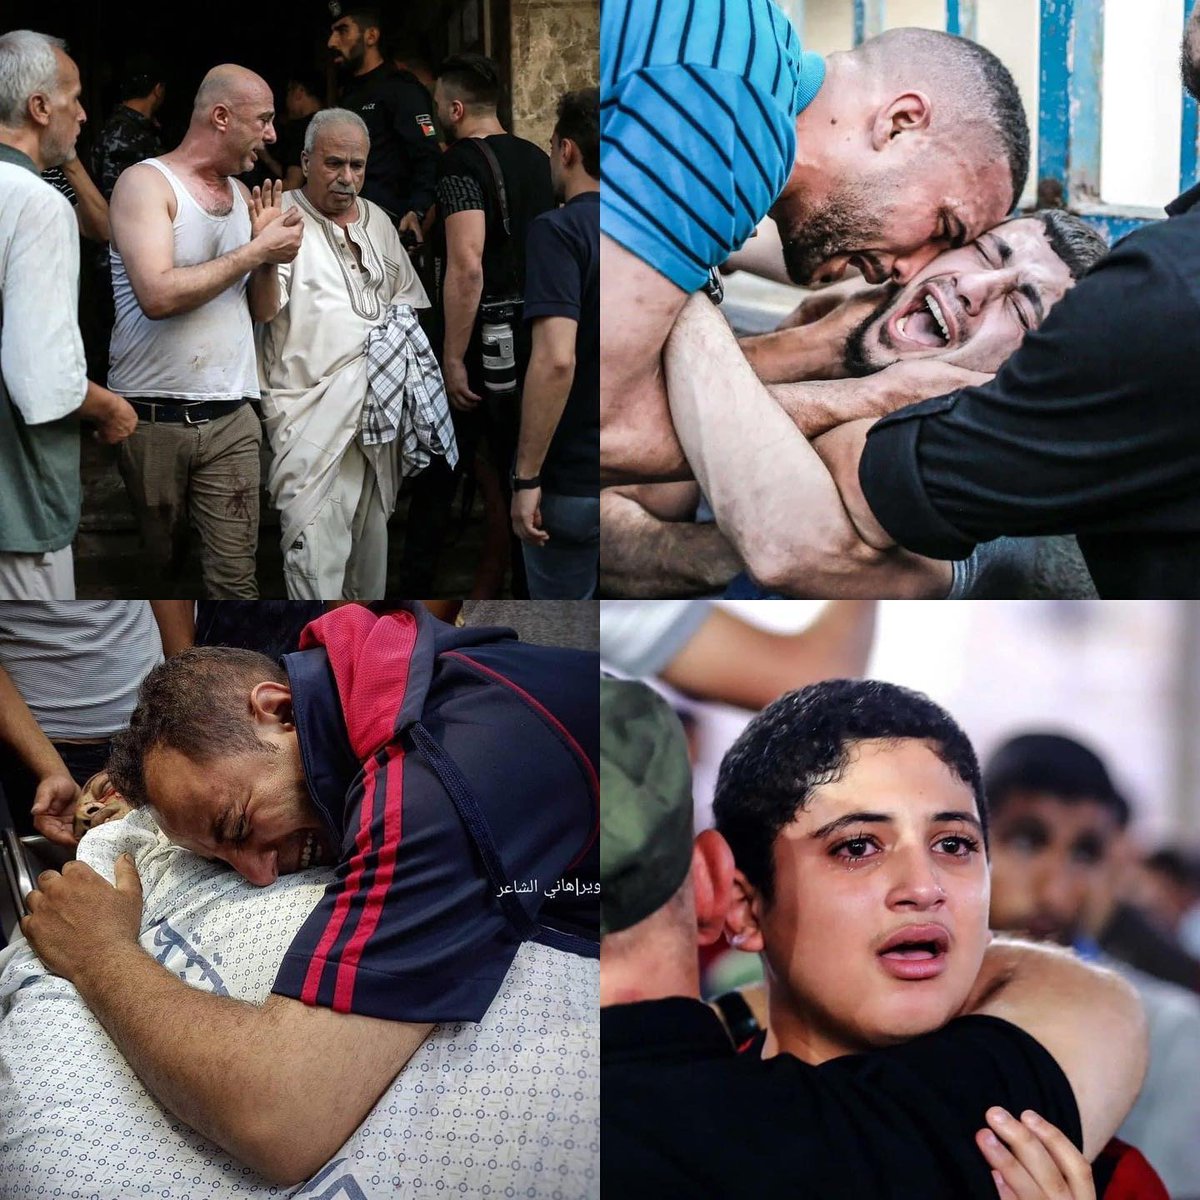 Filistin'de Muharrem ayında Kerbalayı yaşatan yezidlere lanet olsun...

#GazzedeİnsanlıkÖlüyor #Gaza
#GazaUnderAttack 
#FreePalestine